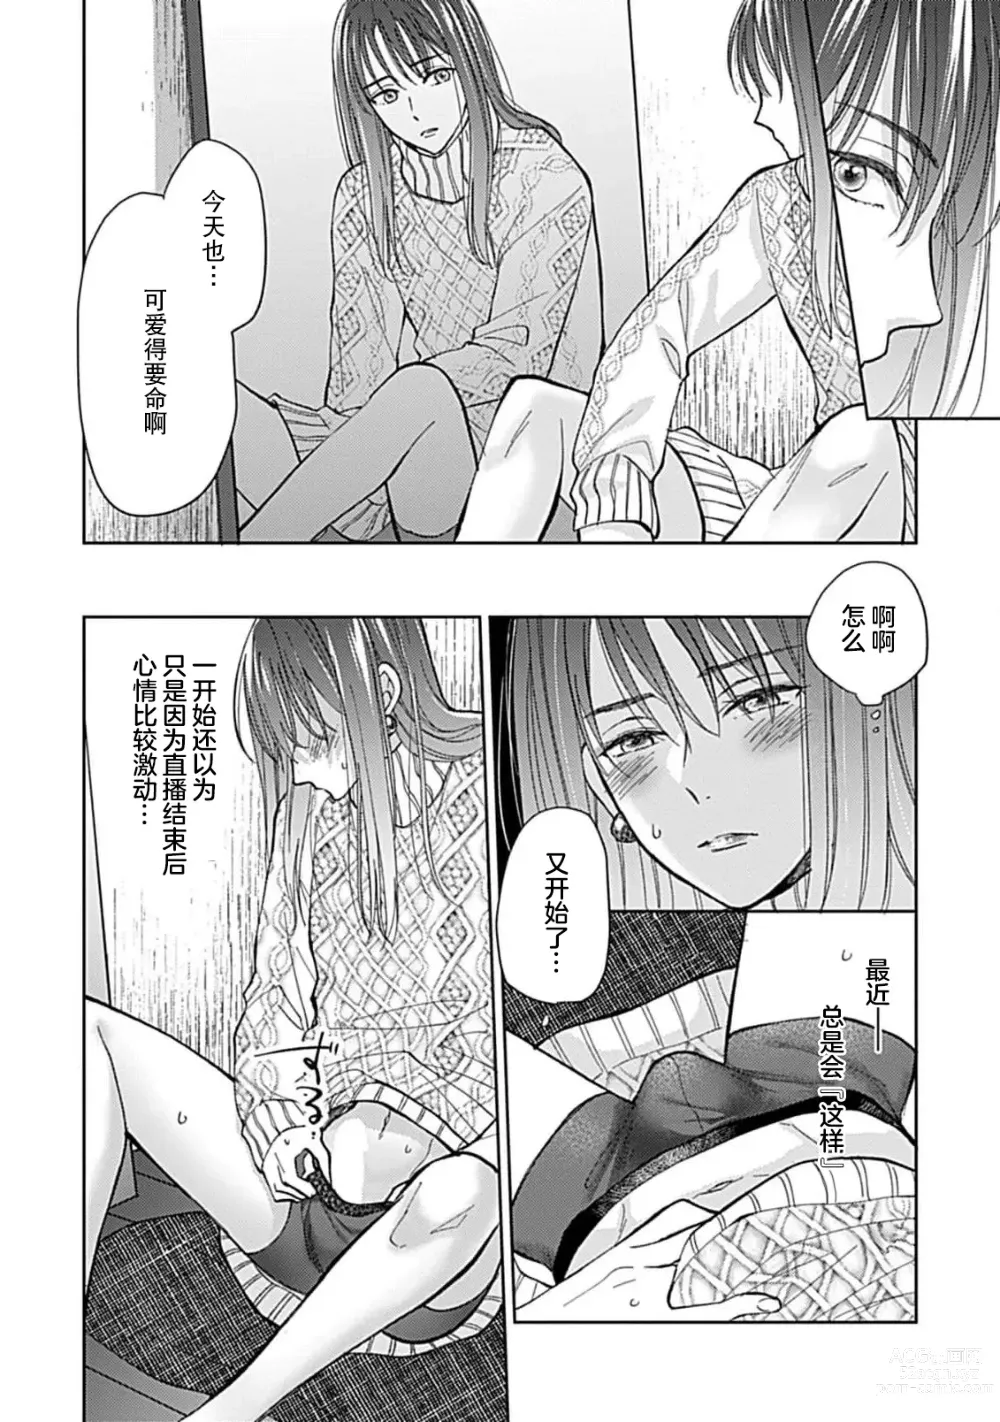 Page 9 of manga 恋情与秘密难以映照 1